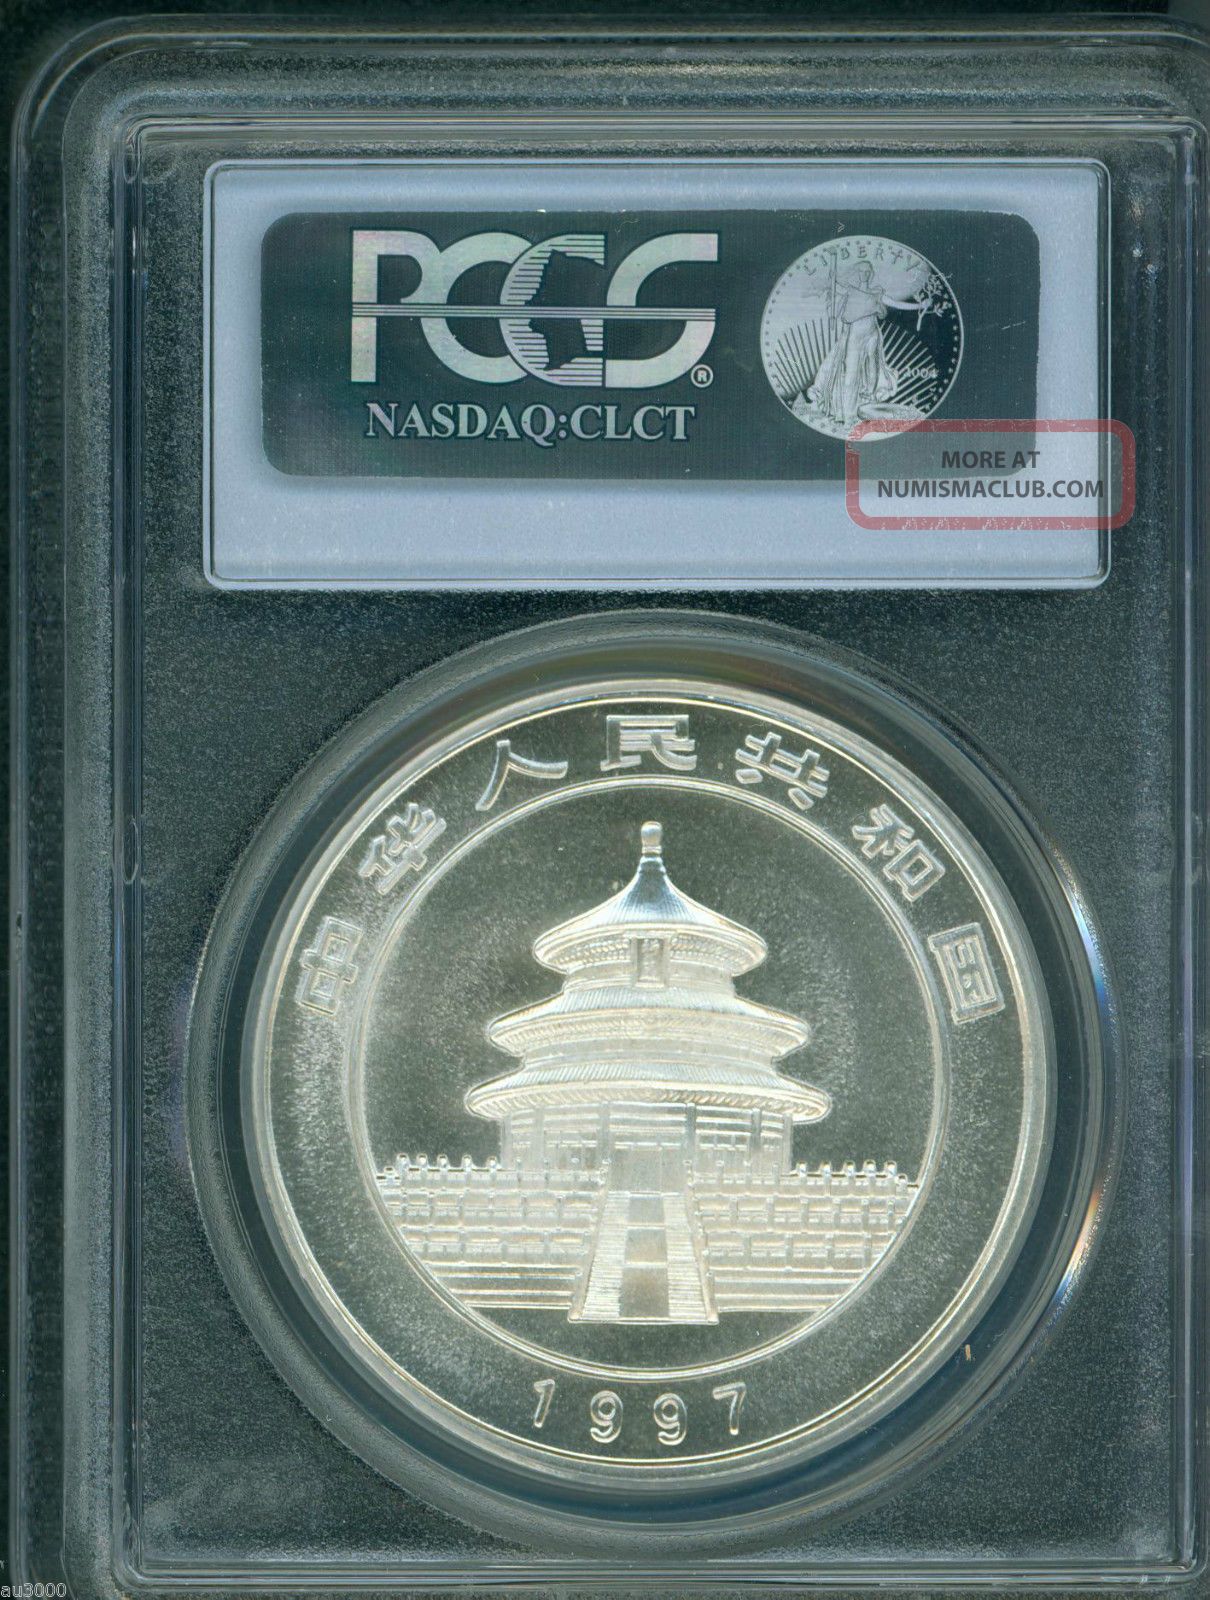 1997 Large Date Panda Silver Coin 1 Oz. 10y Yuan 10 - Yn China Pcgs